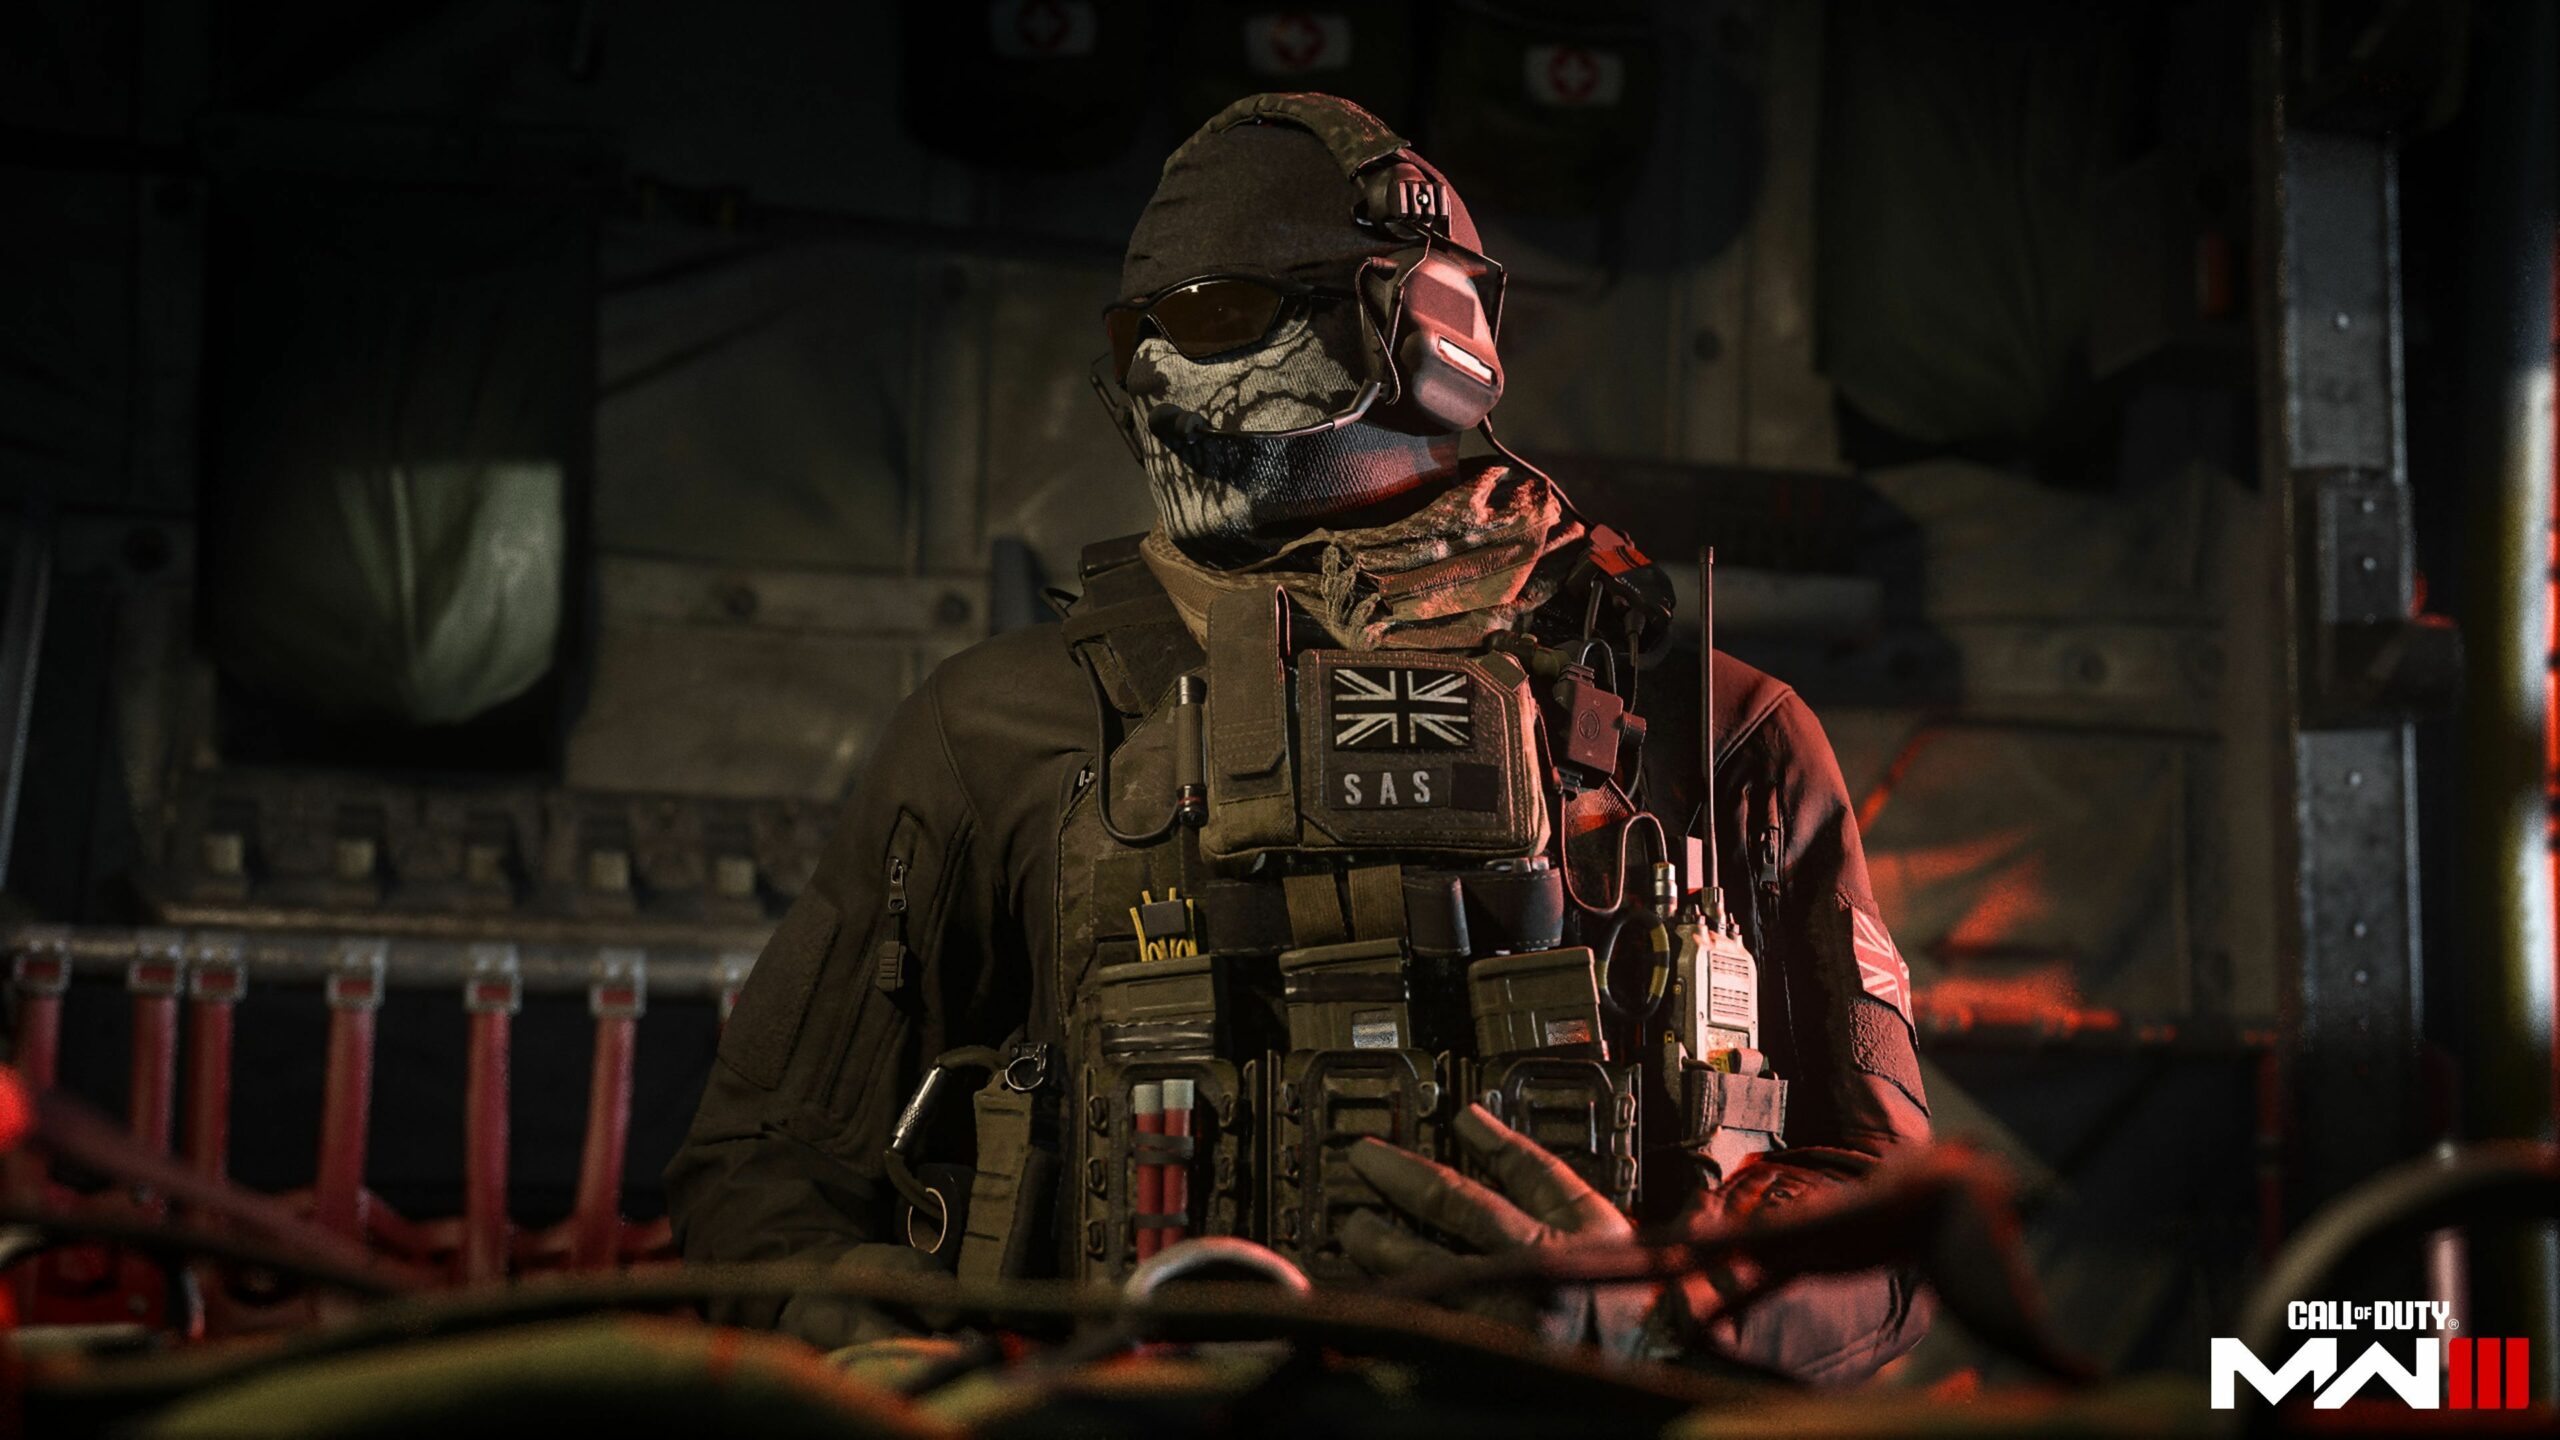 FREE Call of Duty: Modern Warfare II Open Beta on Steam and Battlenet